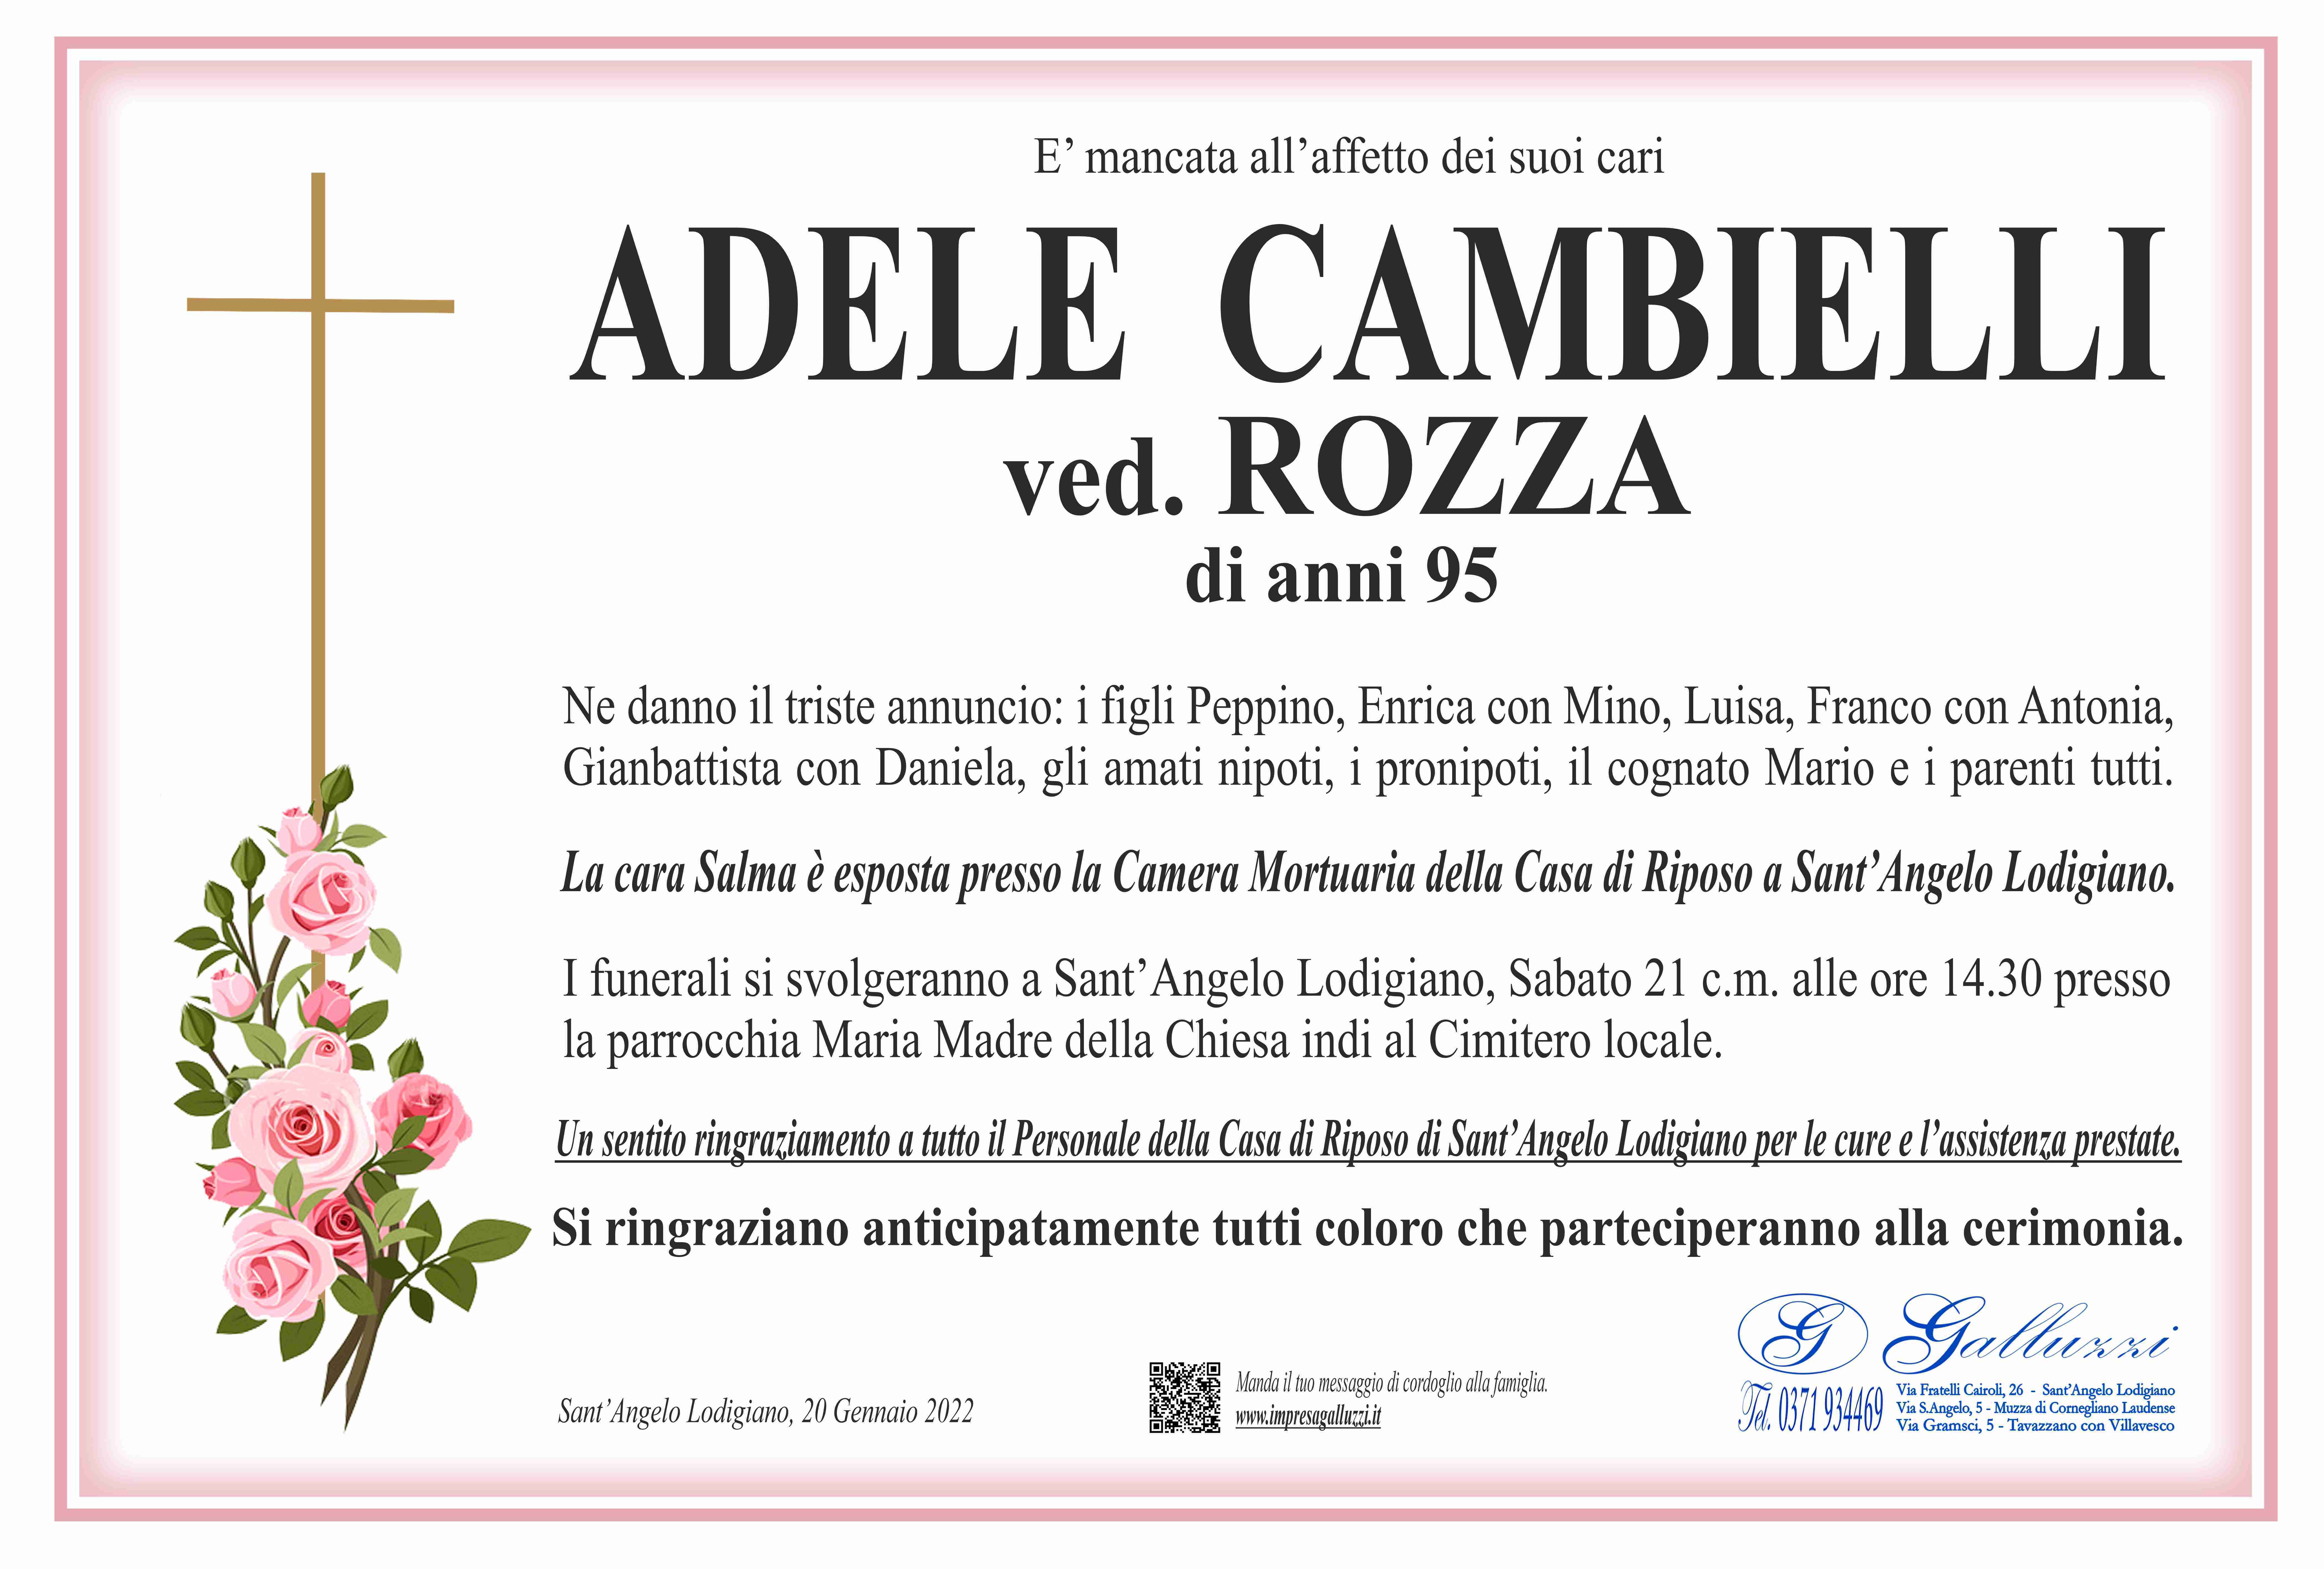 Adele Cambielli